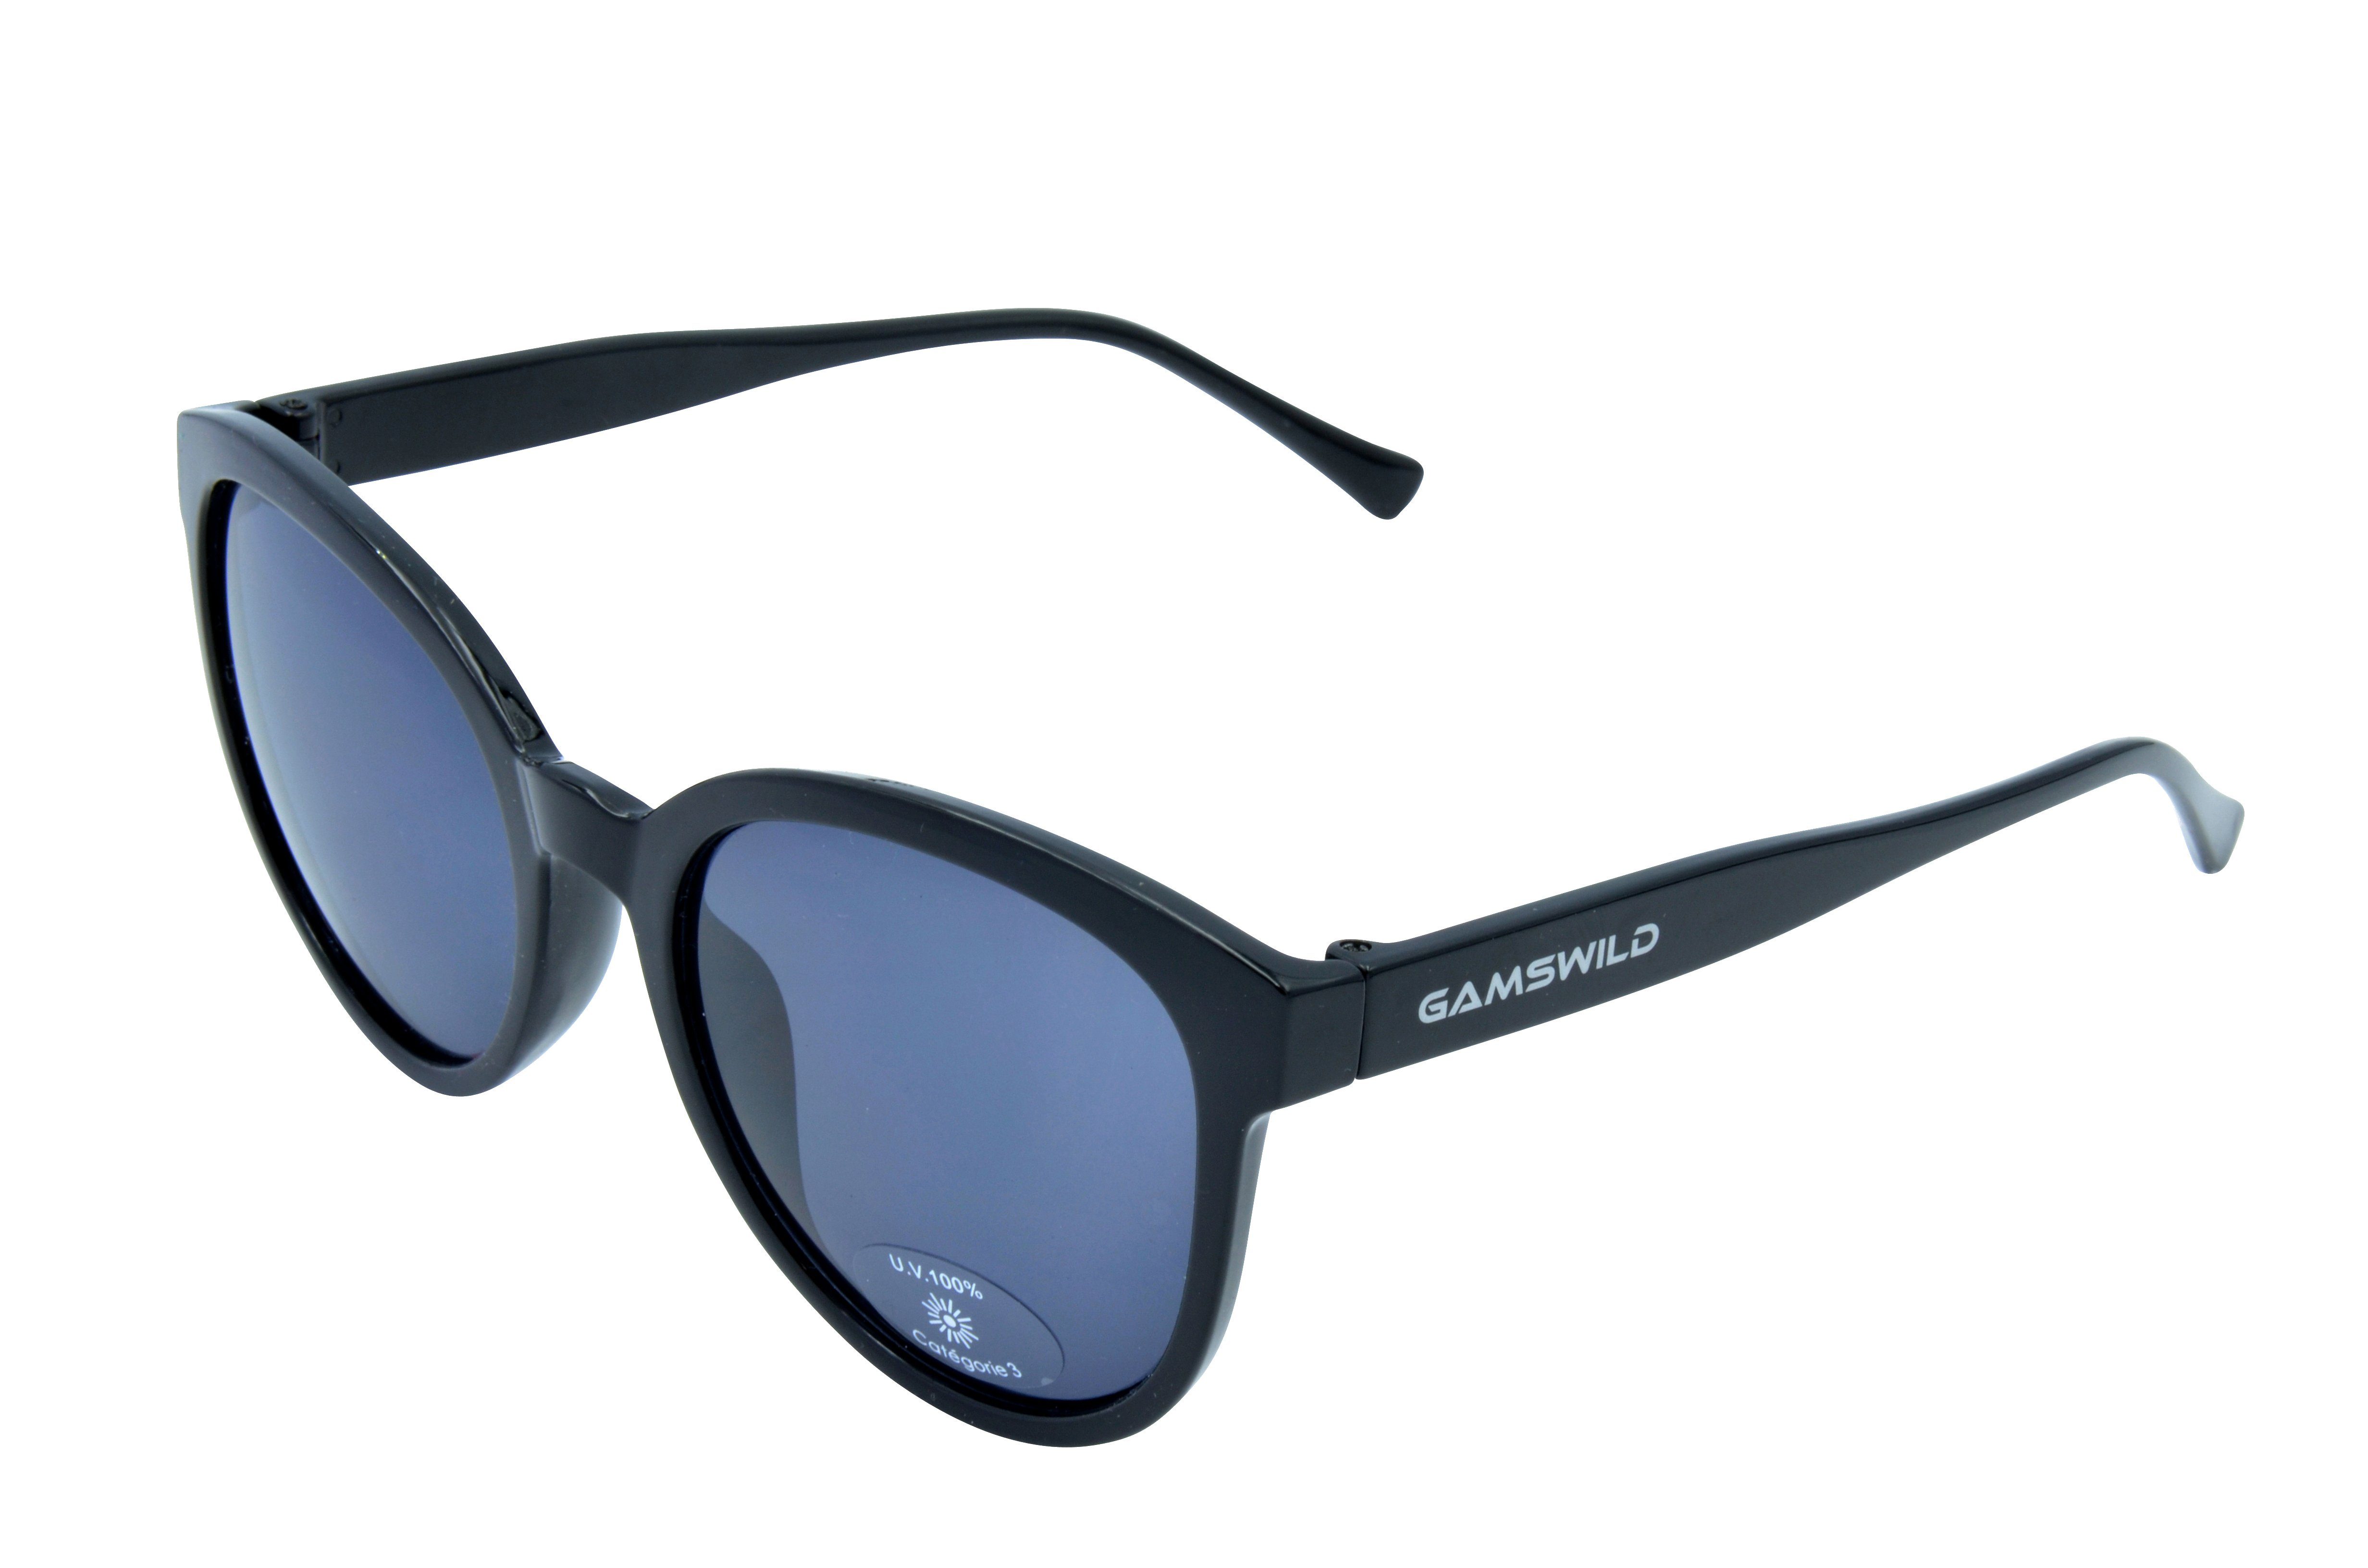 Gamswild Sonnenbrille WM7026 GAMSSTYLE Mode Brille Damen "Pianolackoptik", schwarz